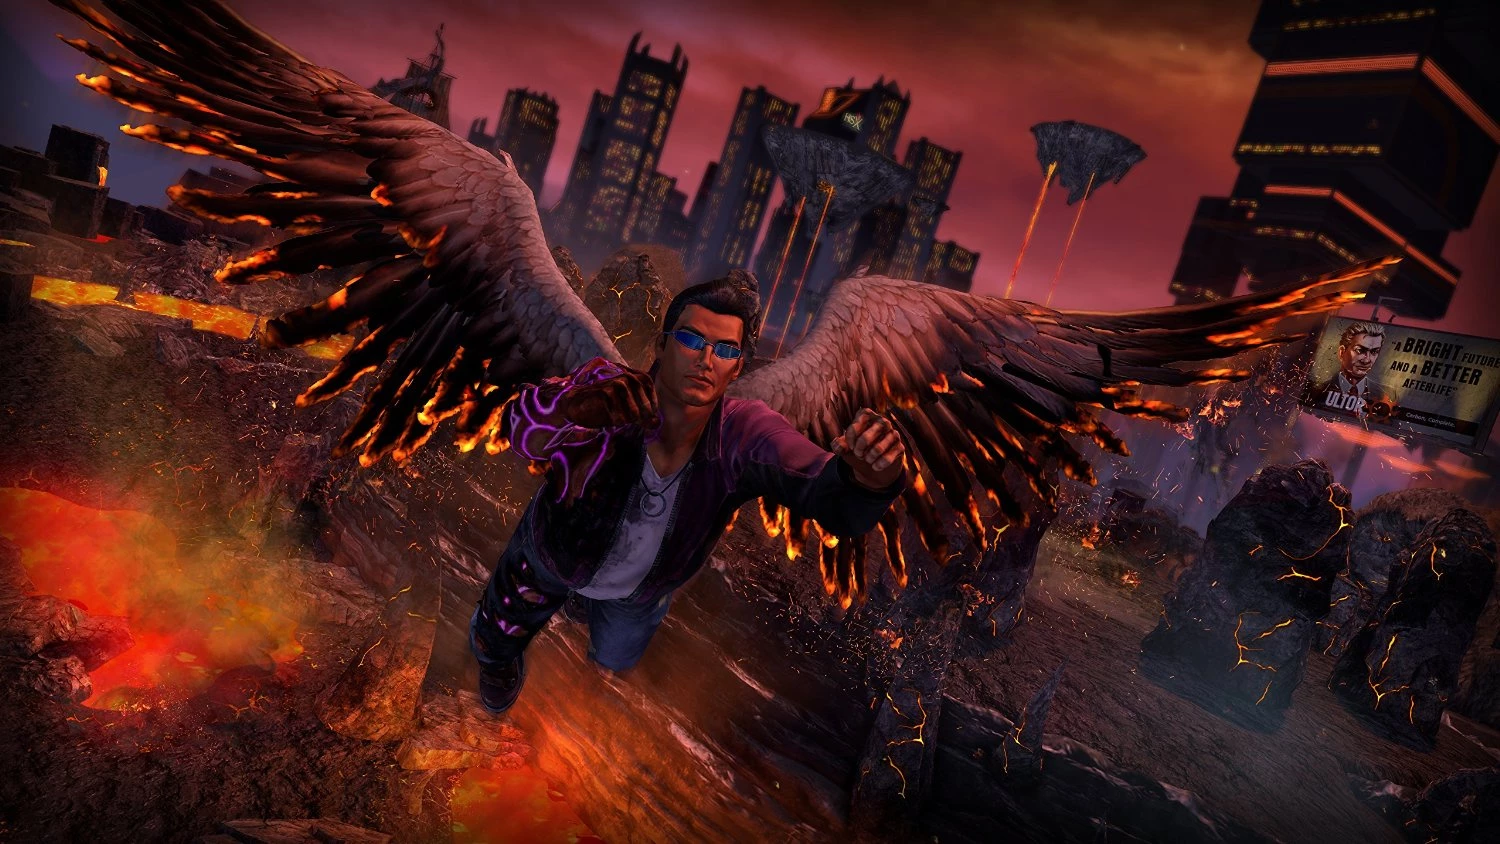 Saints Row 4 Re-Elected + Gat Out of Hell voor de PlayStation 4 kopen op nedgame.nl